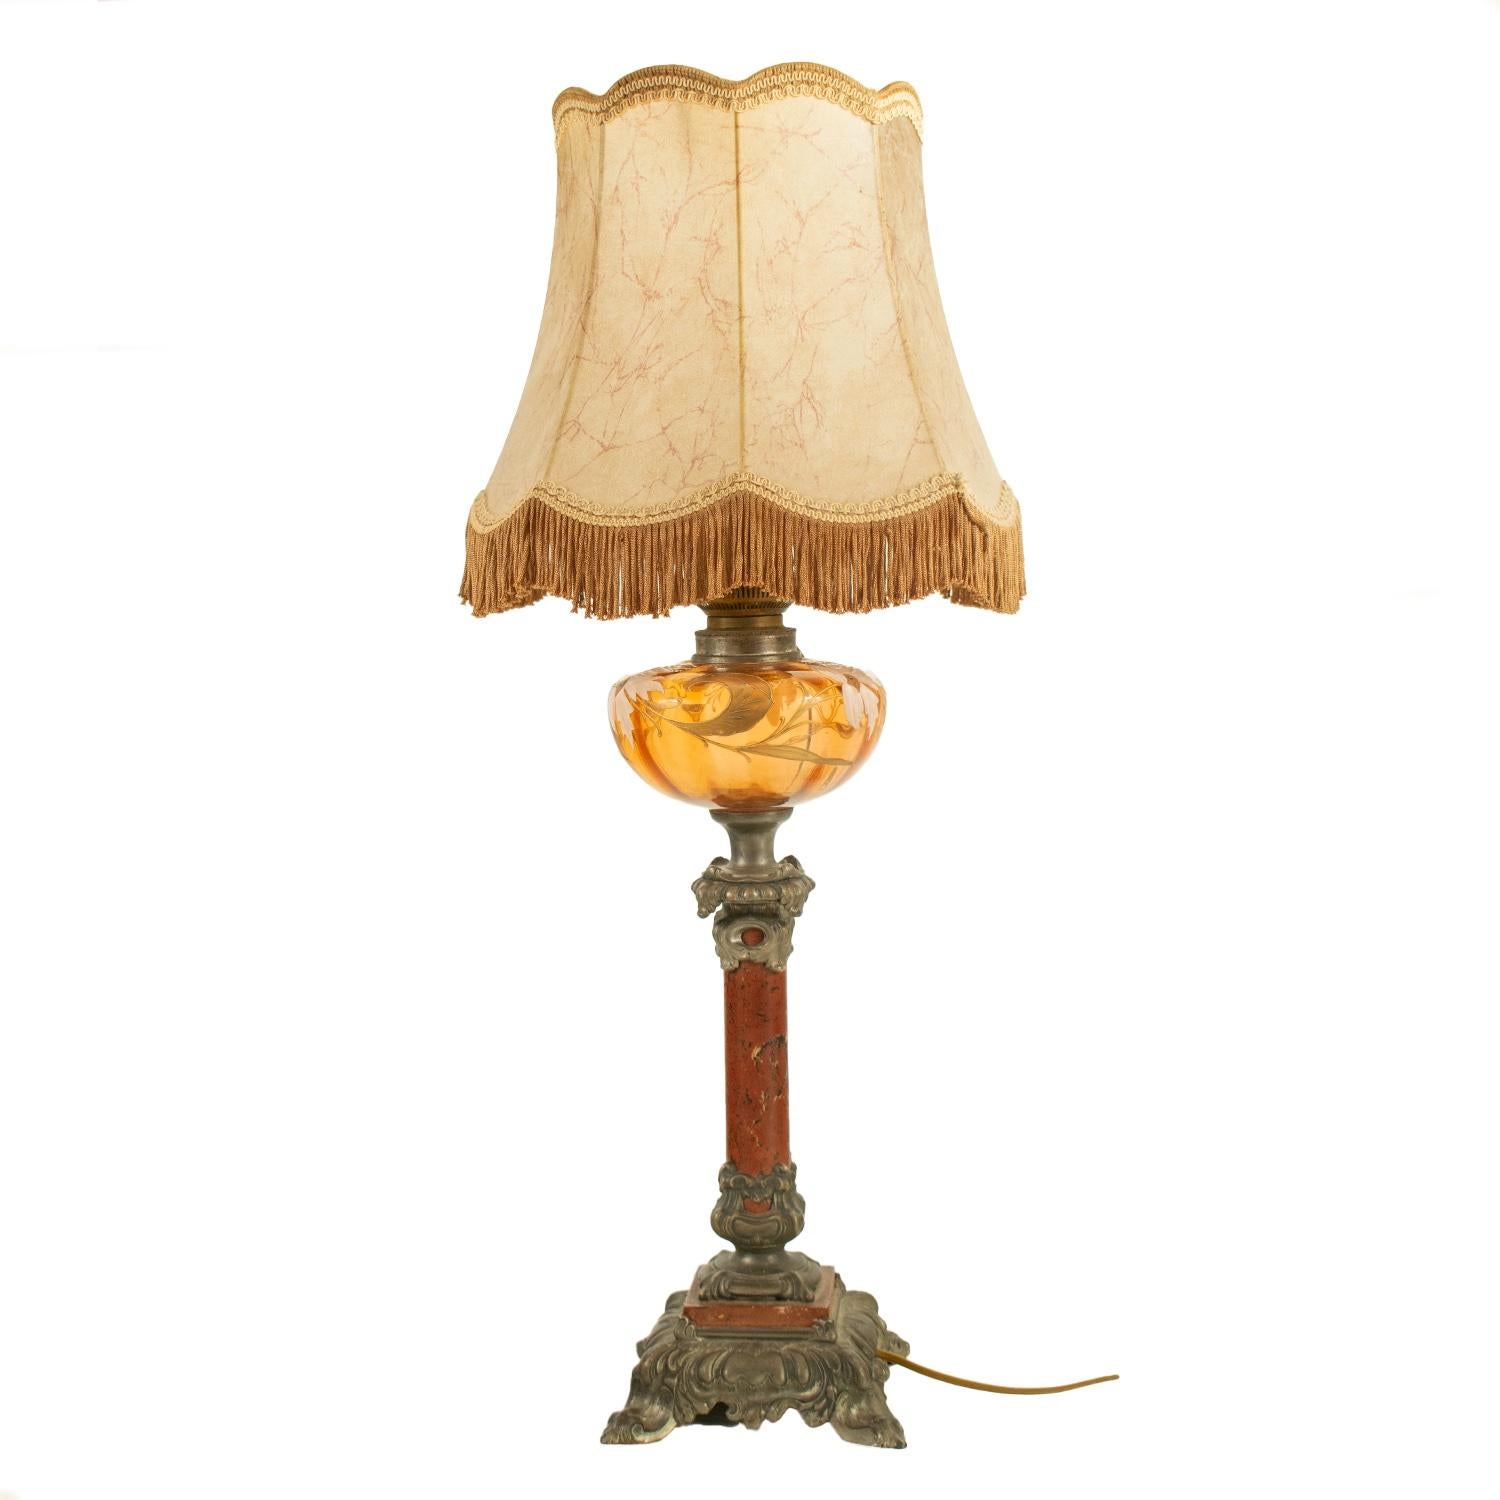 Grande lampe à essence traditionnelle française Art Nouveau convertie à l'électricité avec abat-jour d'origine, vers 1900.

Avec une base en marbre rouge et en spéléologie et un bol en verre avec une décoration florale peinte à la main. 

Le câblage